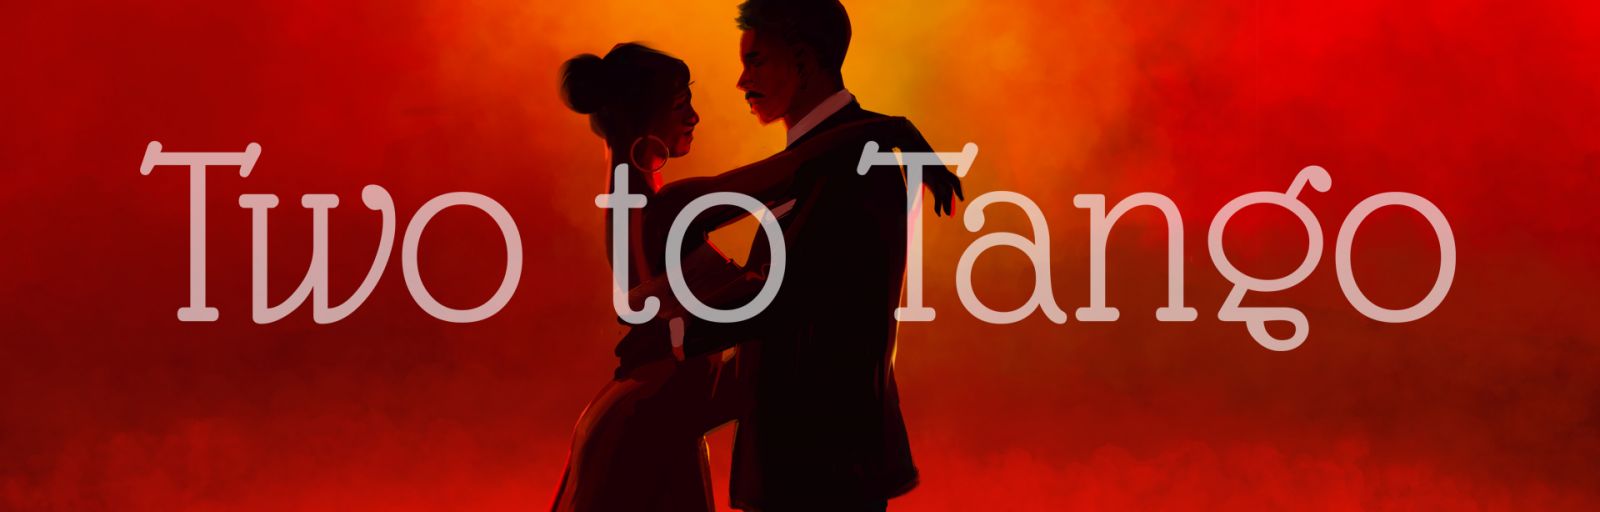 Two To Tango album